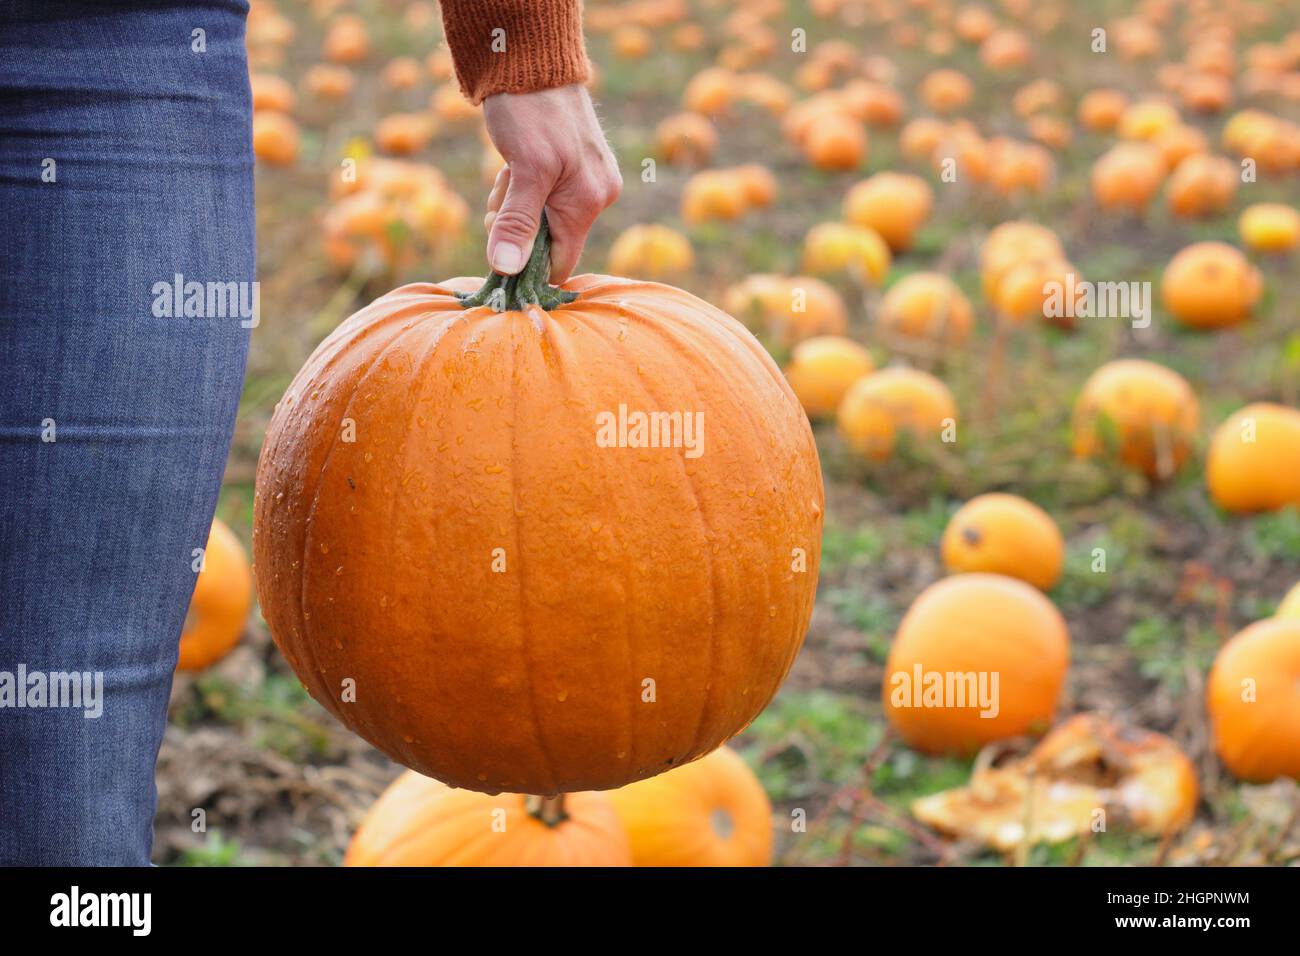 Citrouilles.Une femme cueille une grande citrouille Jack O Lantern dans une ferme de citrouilles du Royaume-Uni en prévision des célébrations d'Halloween en octobre.ROYAUME-UNI Banque D'Images